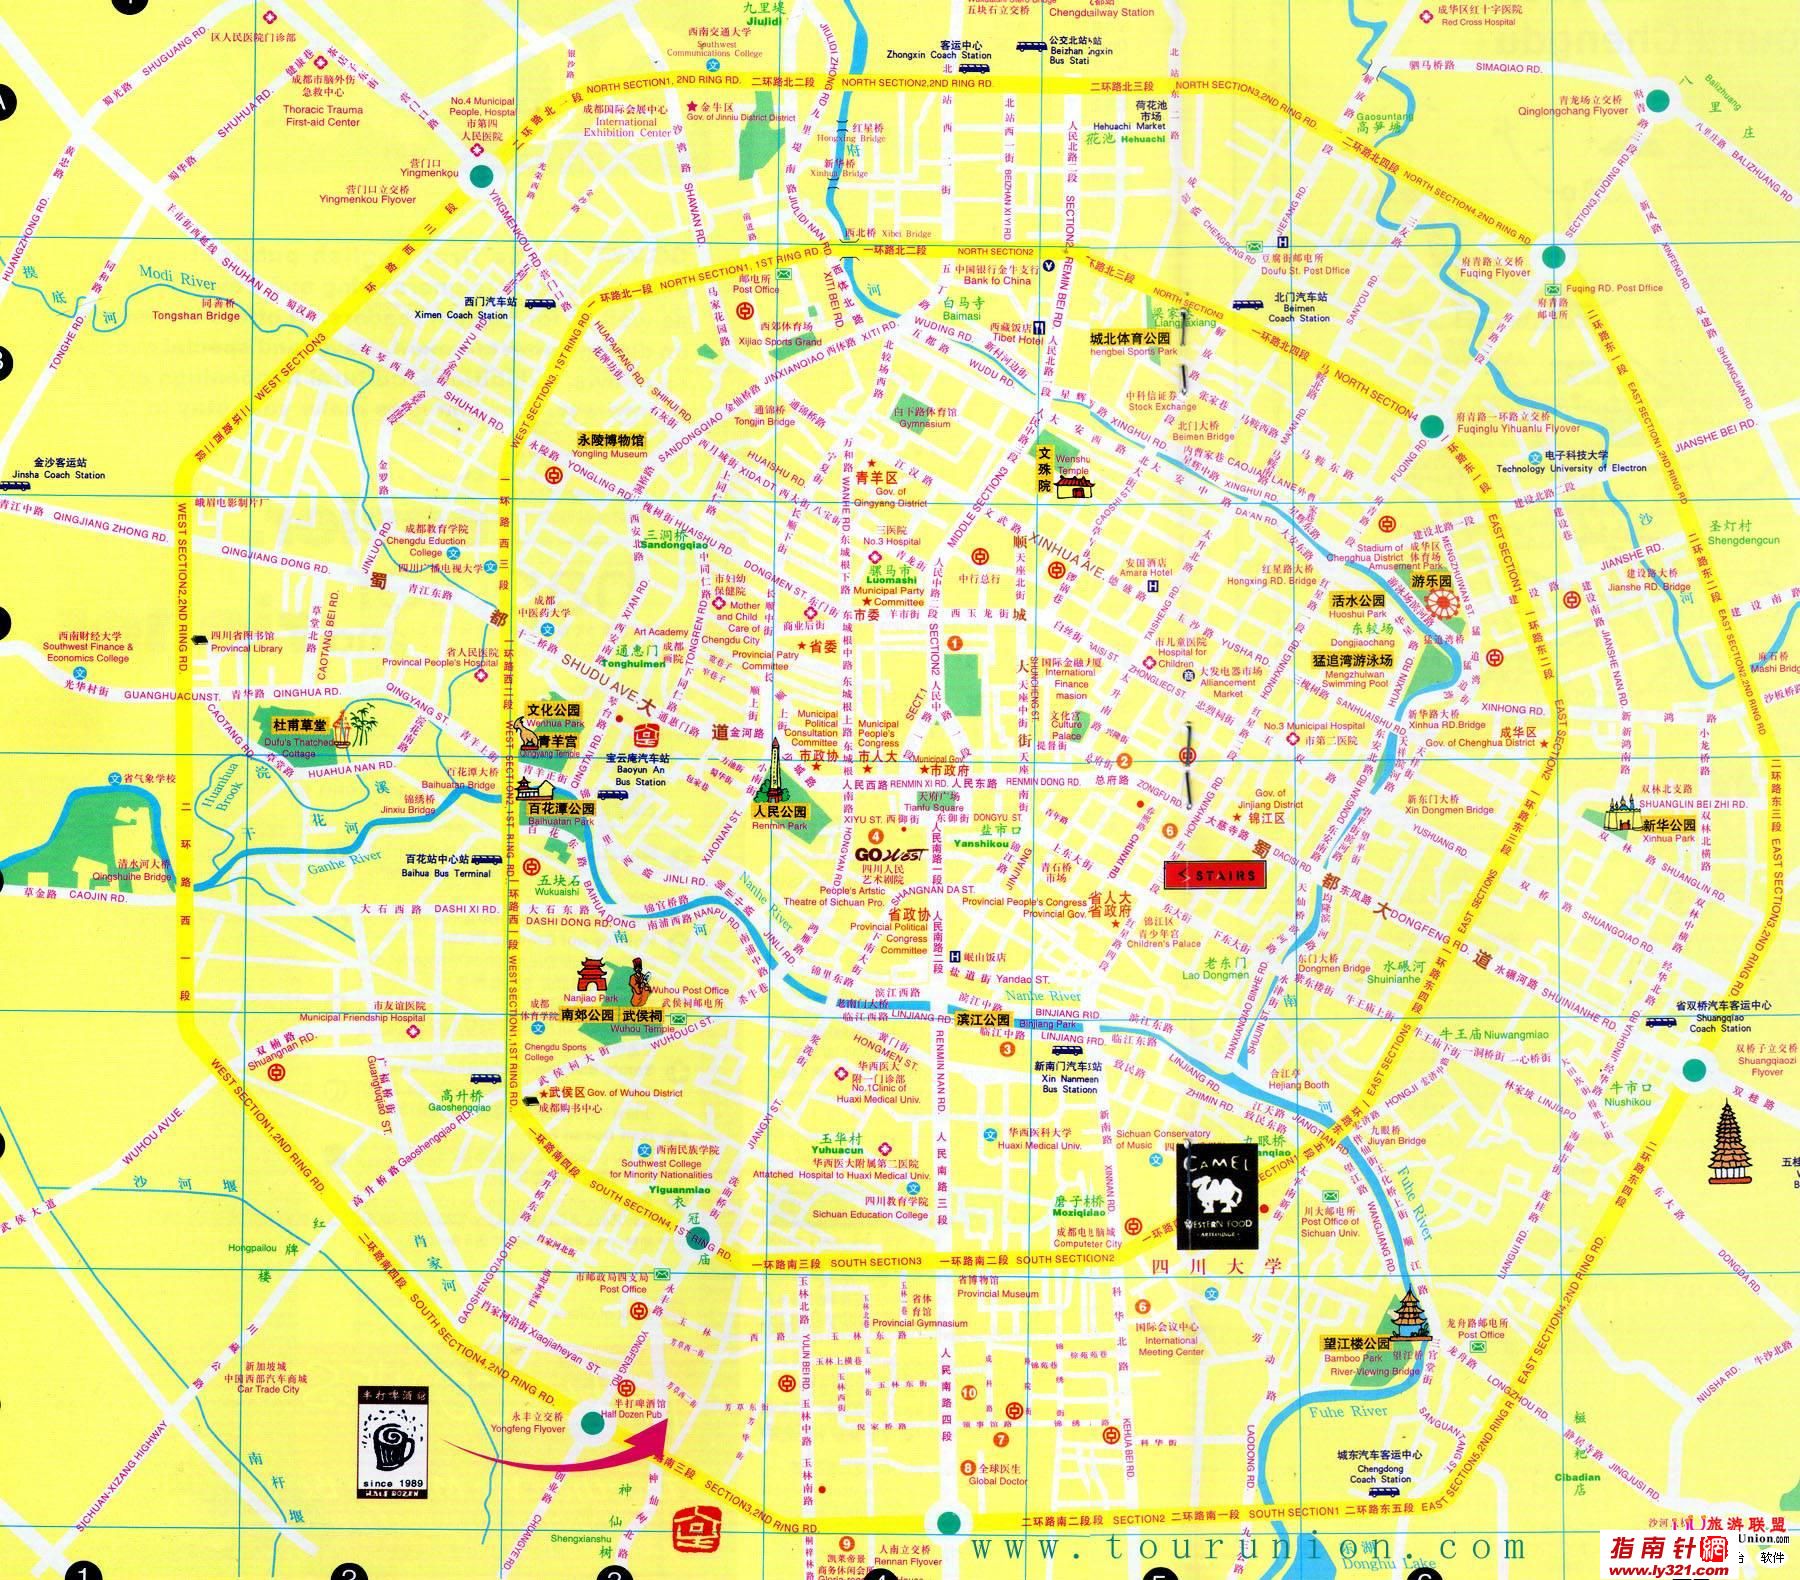 四川成都中英文地图_成都市旅游景点地图查询图片